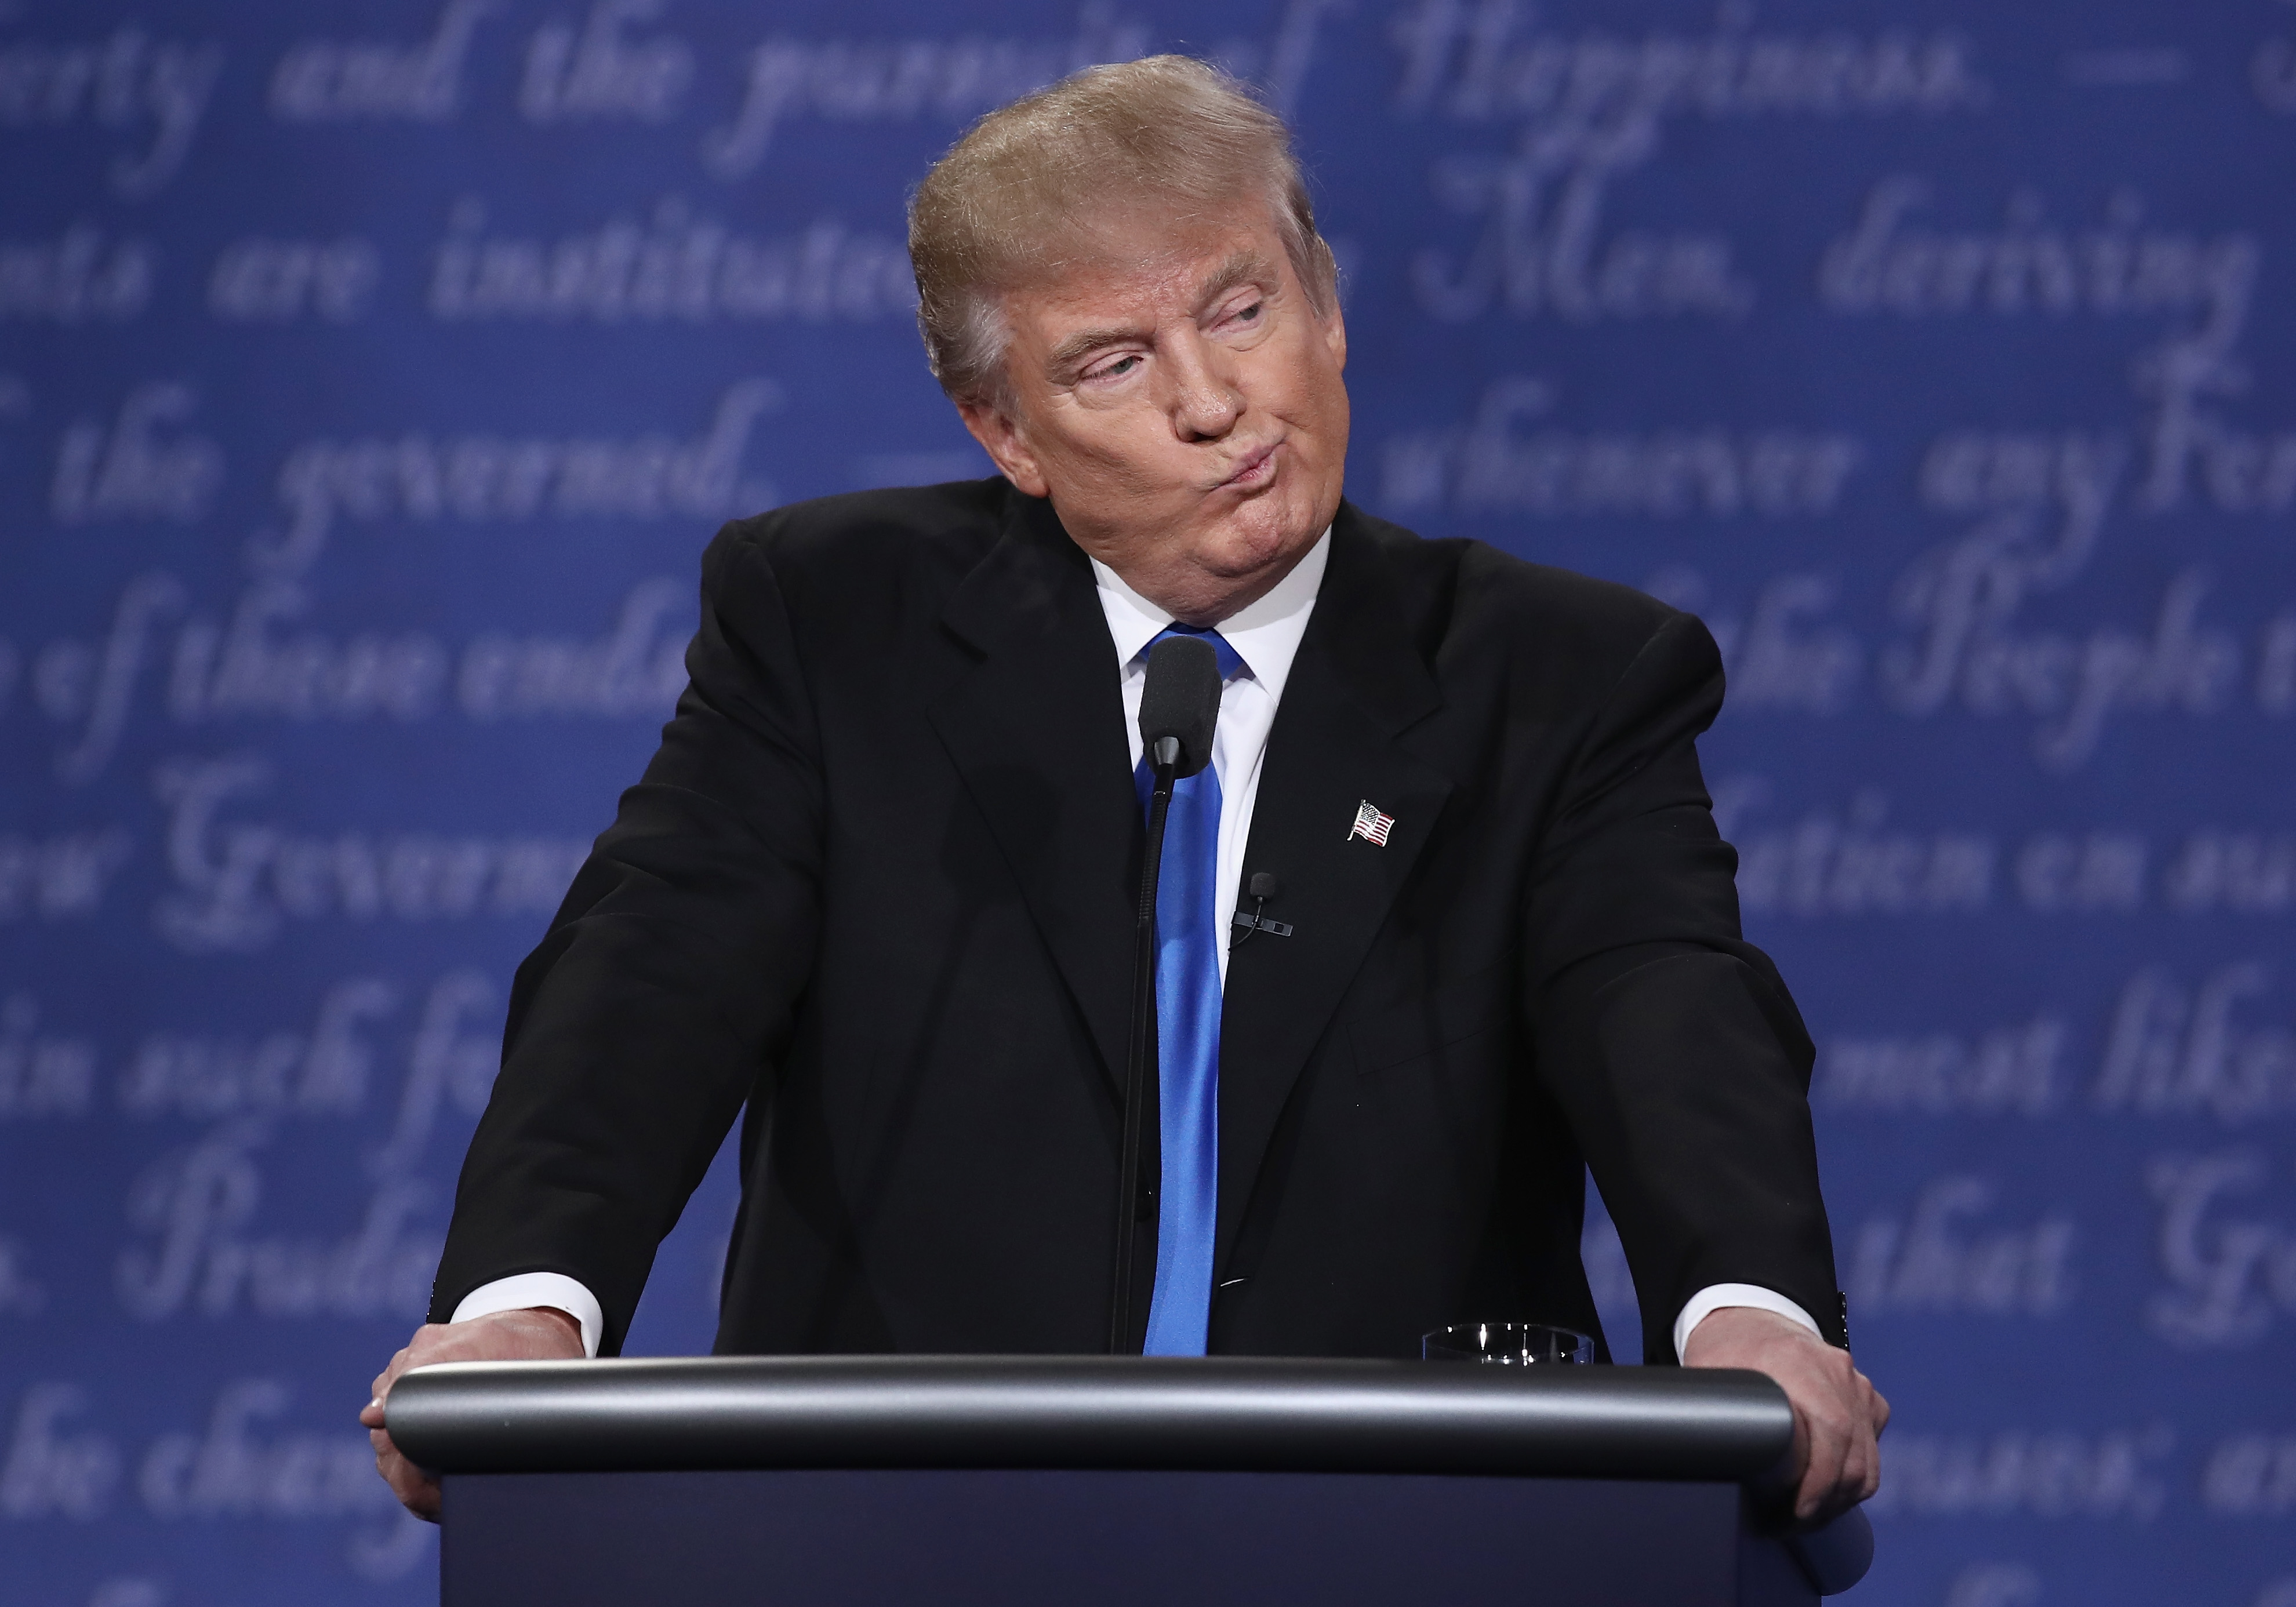 Republican presidential nominee Donald Trump gestures during the Presidential Debate at Hofstra University in Hempstead, N.Y., on Sept. 26, 2016. (Win McNamee—Getty Images)